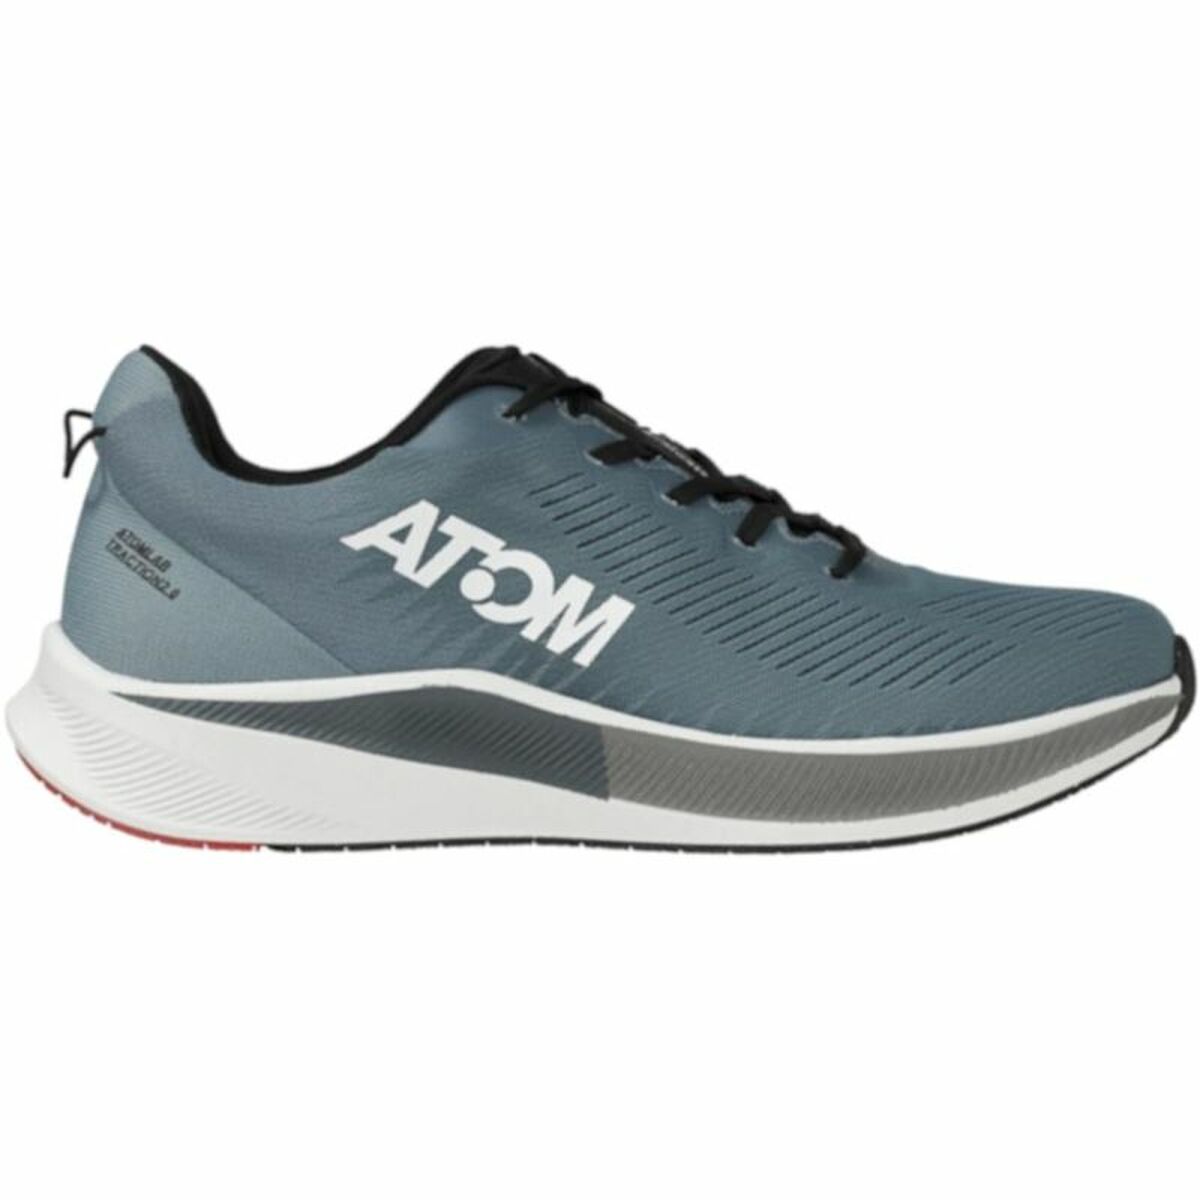 Kaufe Laufschuhe für Erwachsene Atom AT134 Blau grün Herren bei AWK Flagship um € 94.00